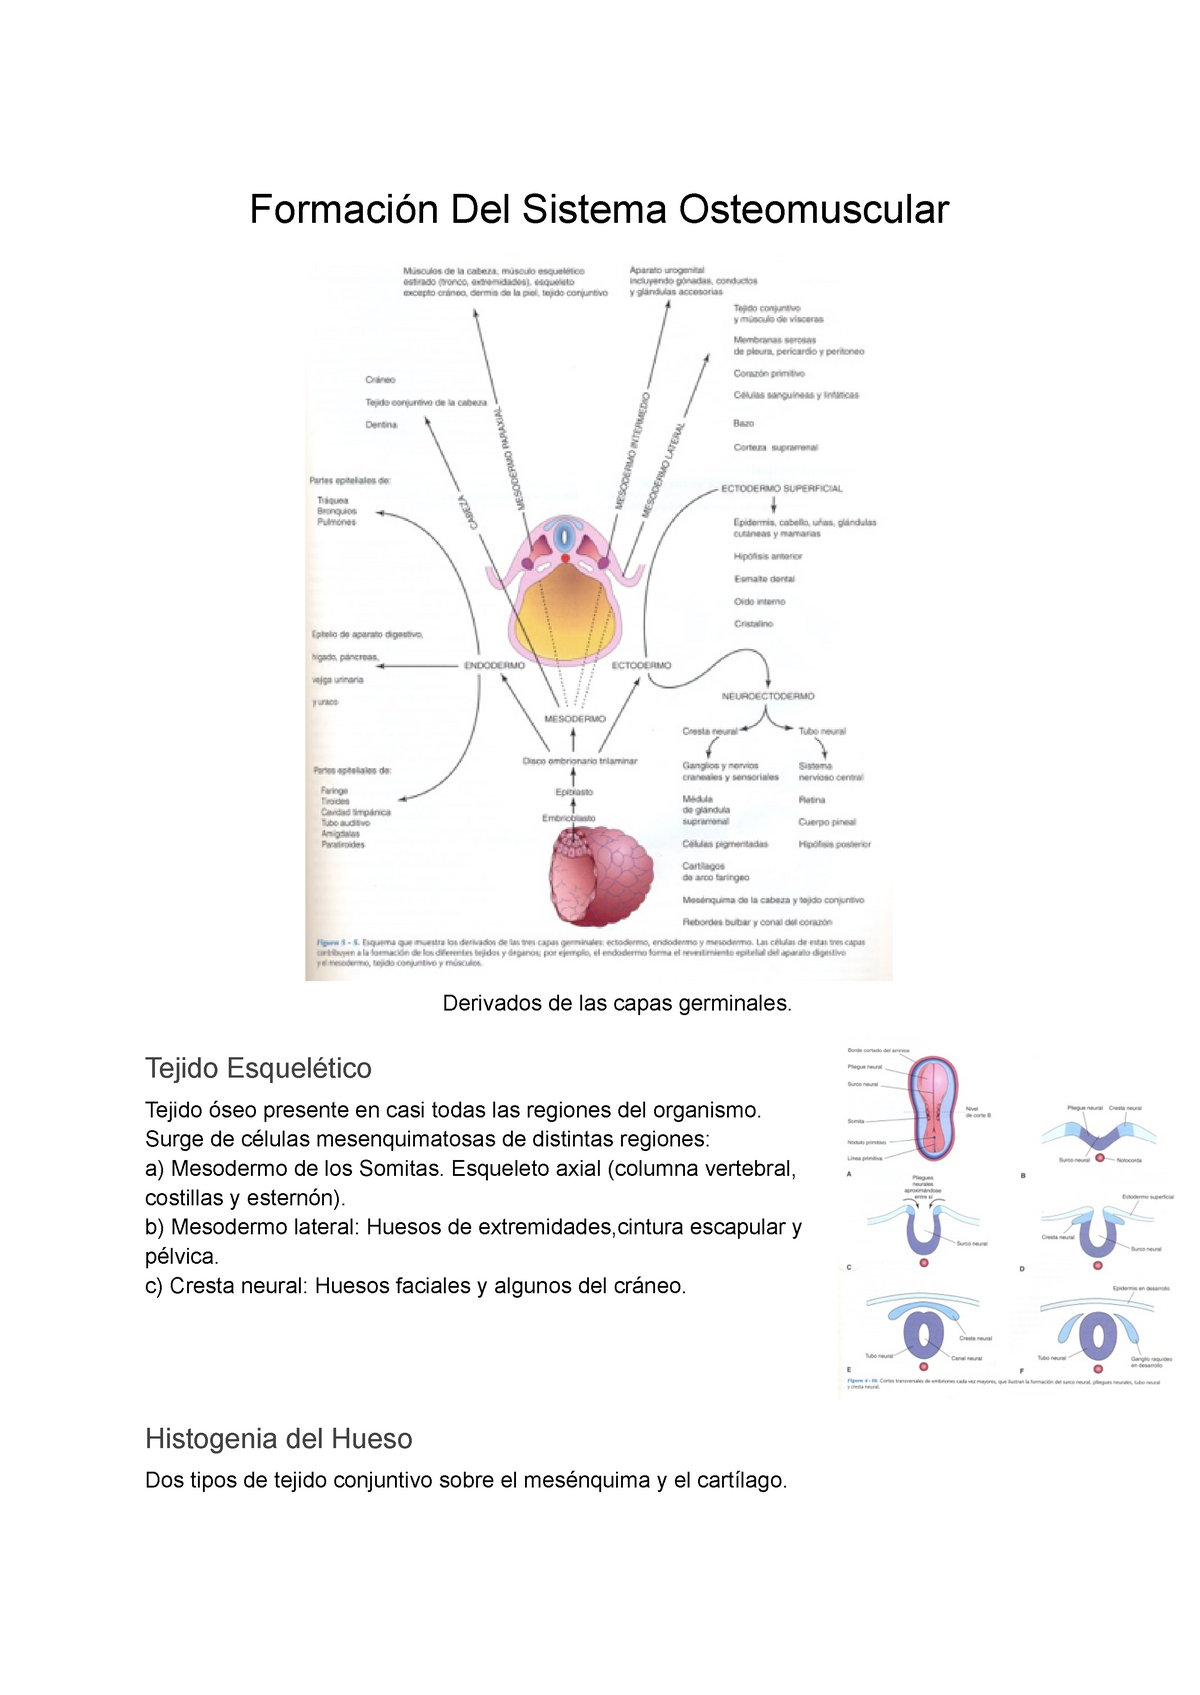 Desarrollo Del Sistema Osteomuscular Y Extremidades Formación Del Sistema Osteomuscular 2339